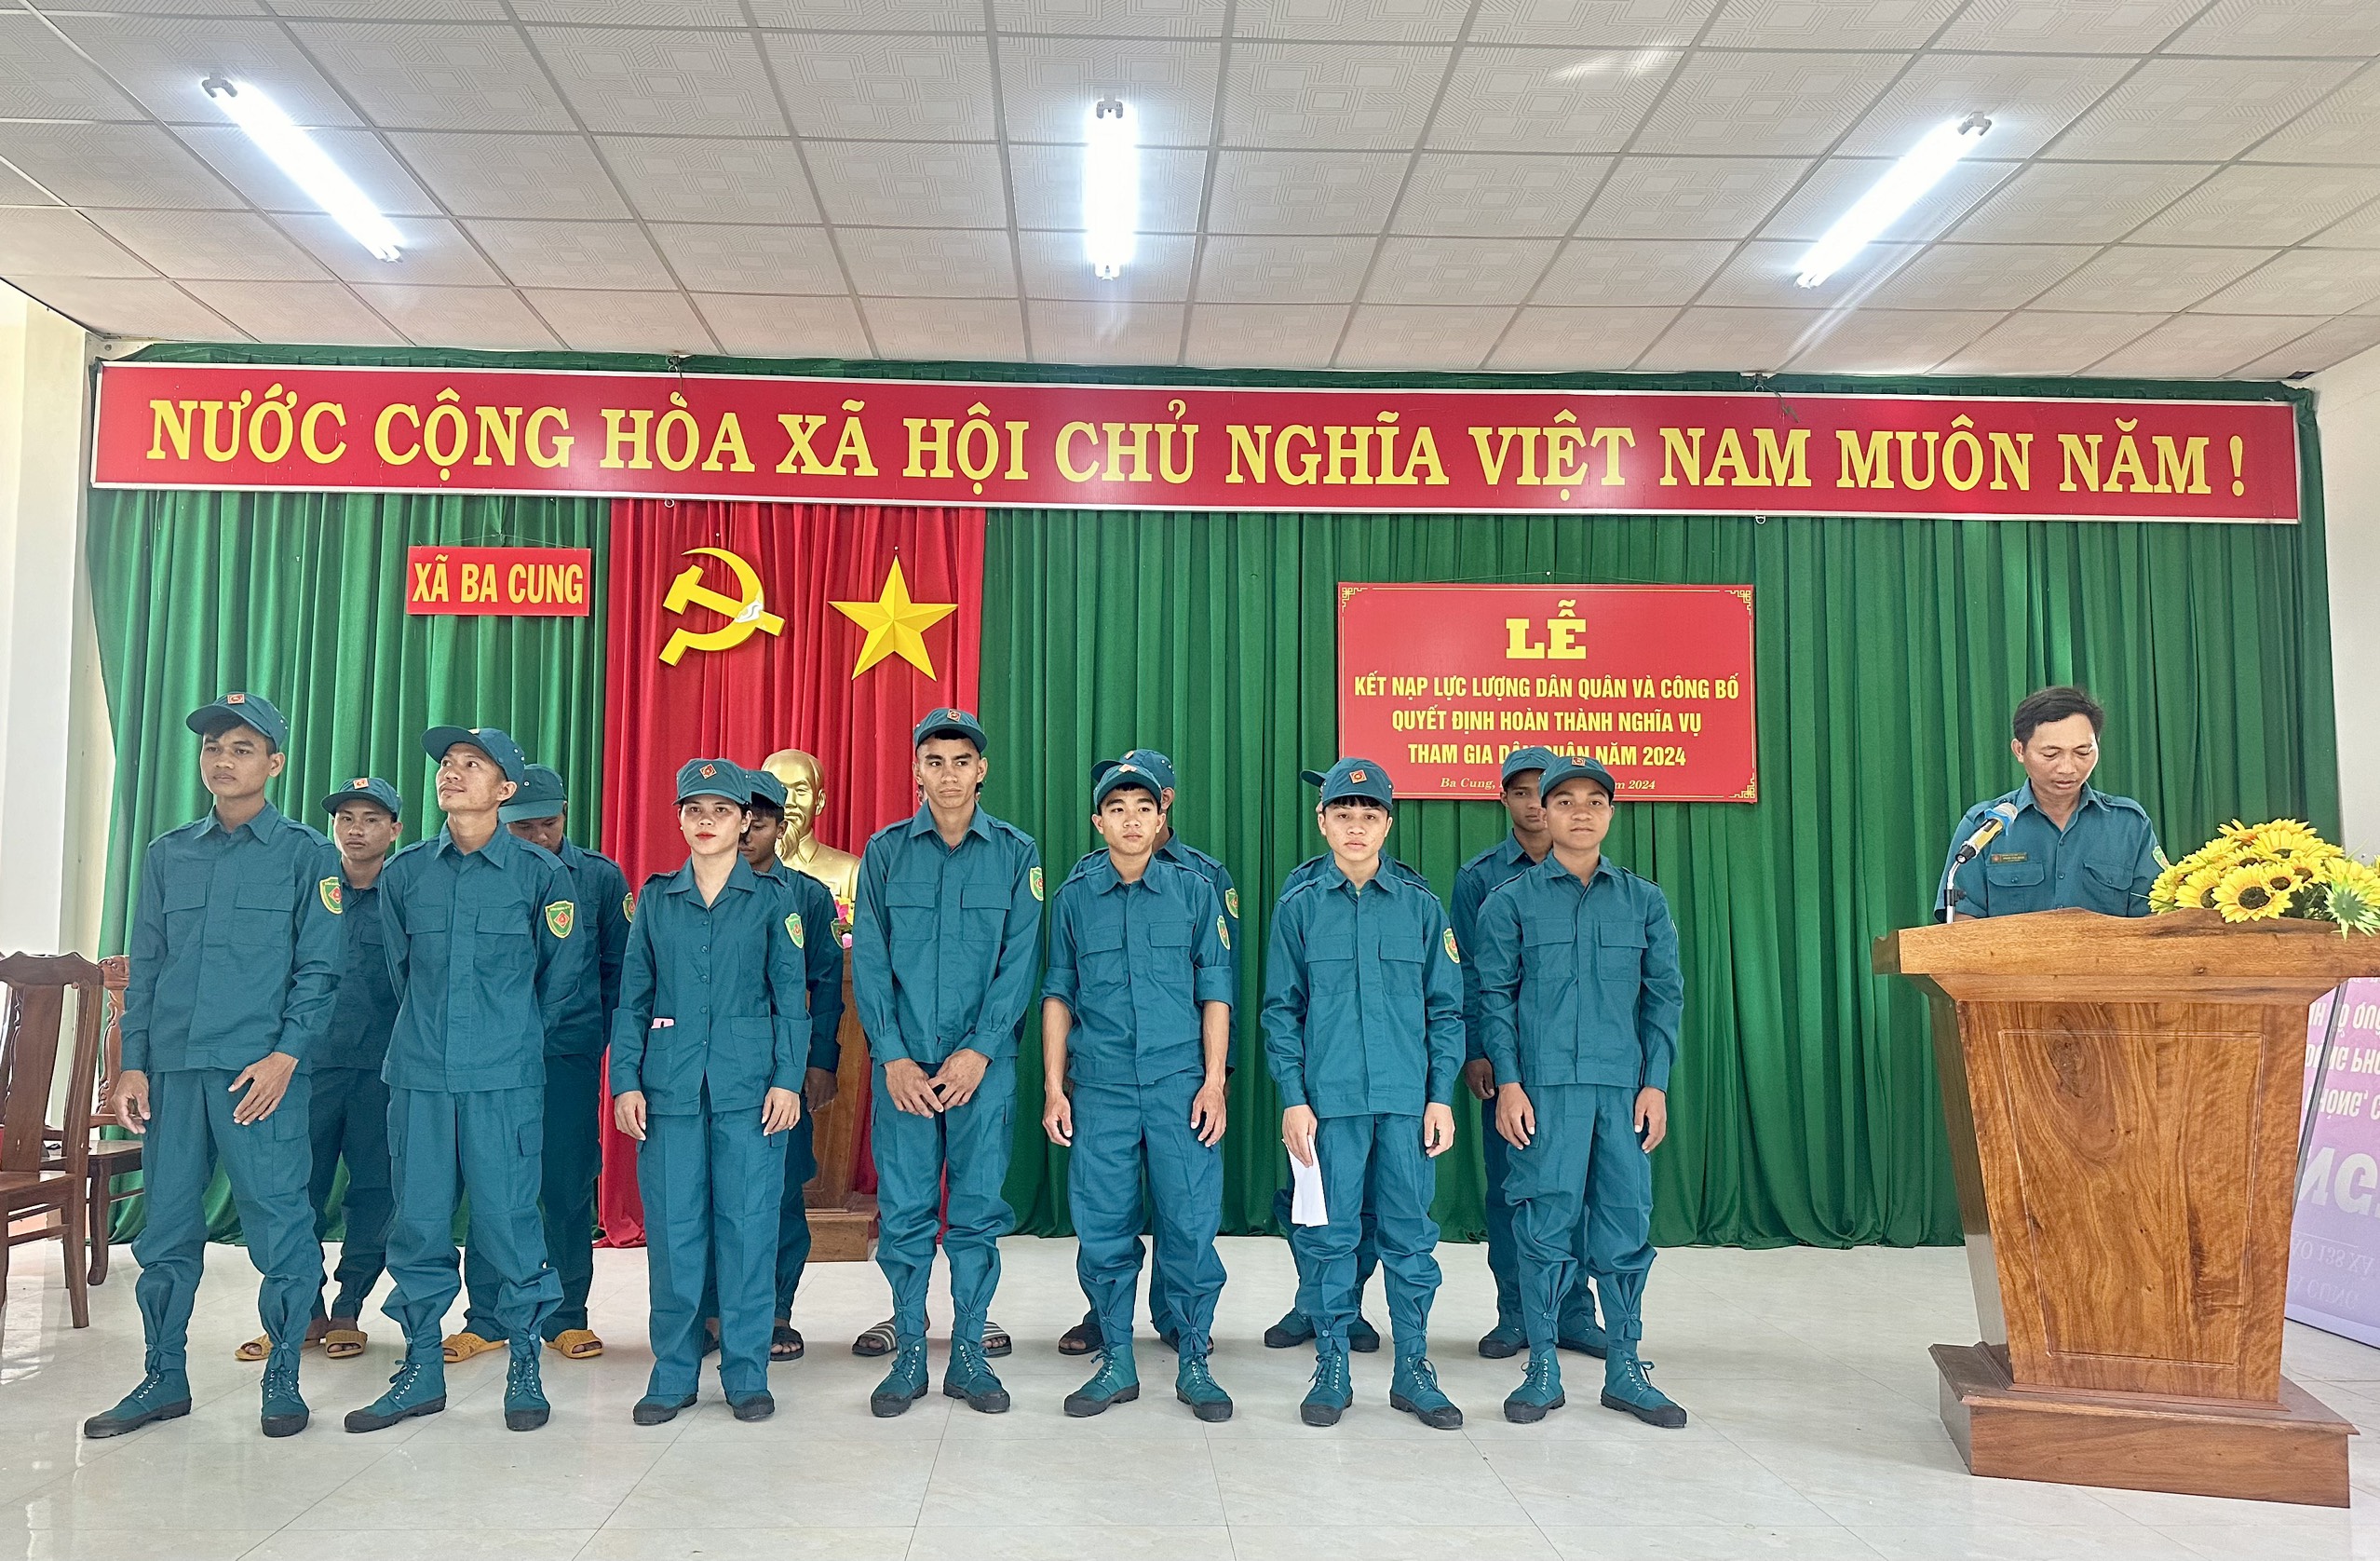 UBND xã Ba Cung tổ chức Lễ kết nạp dân quân mới năm 2024